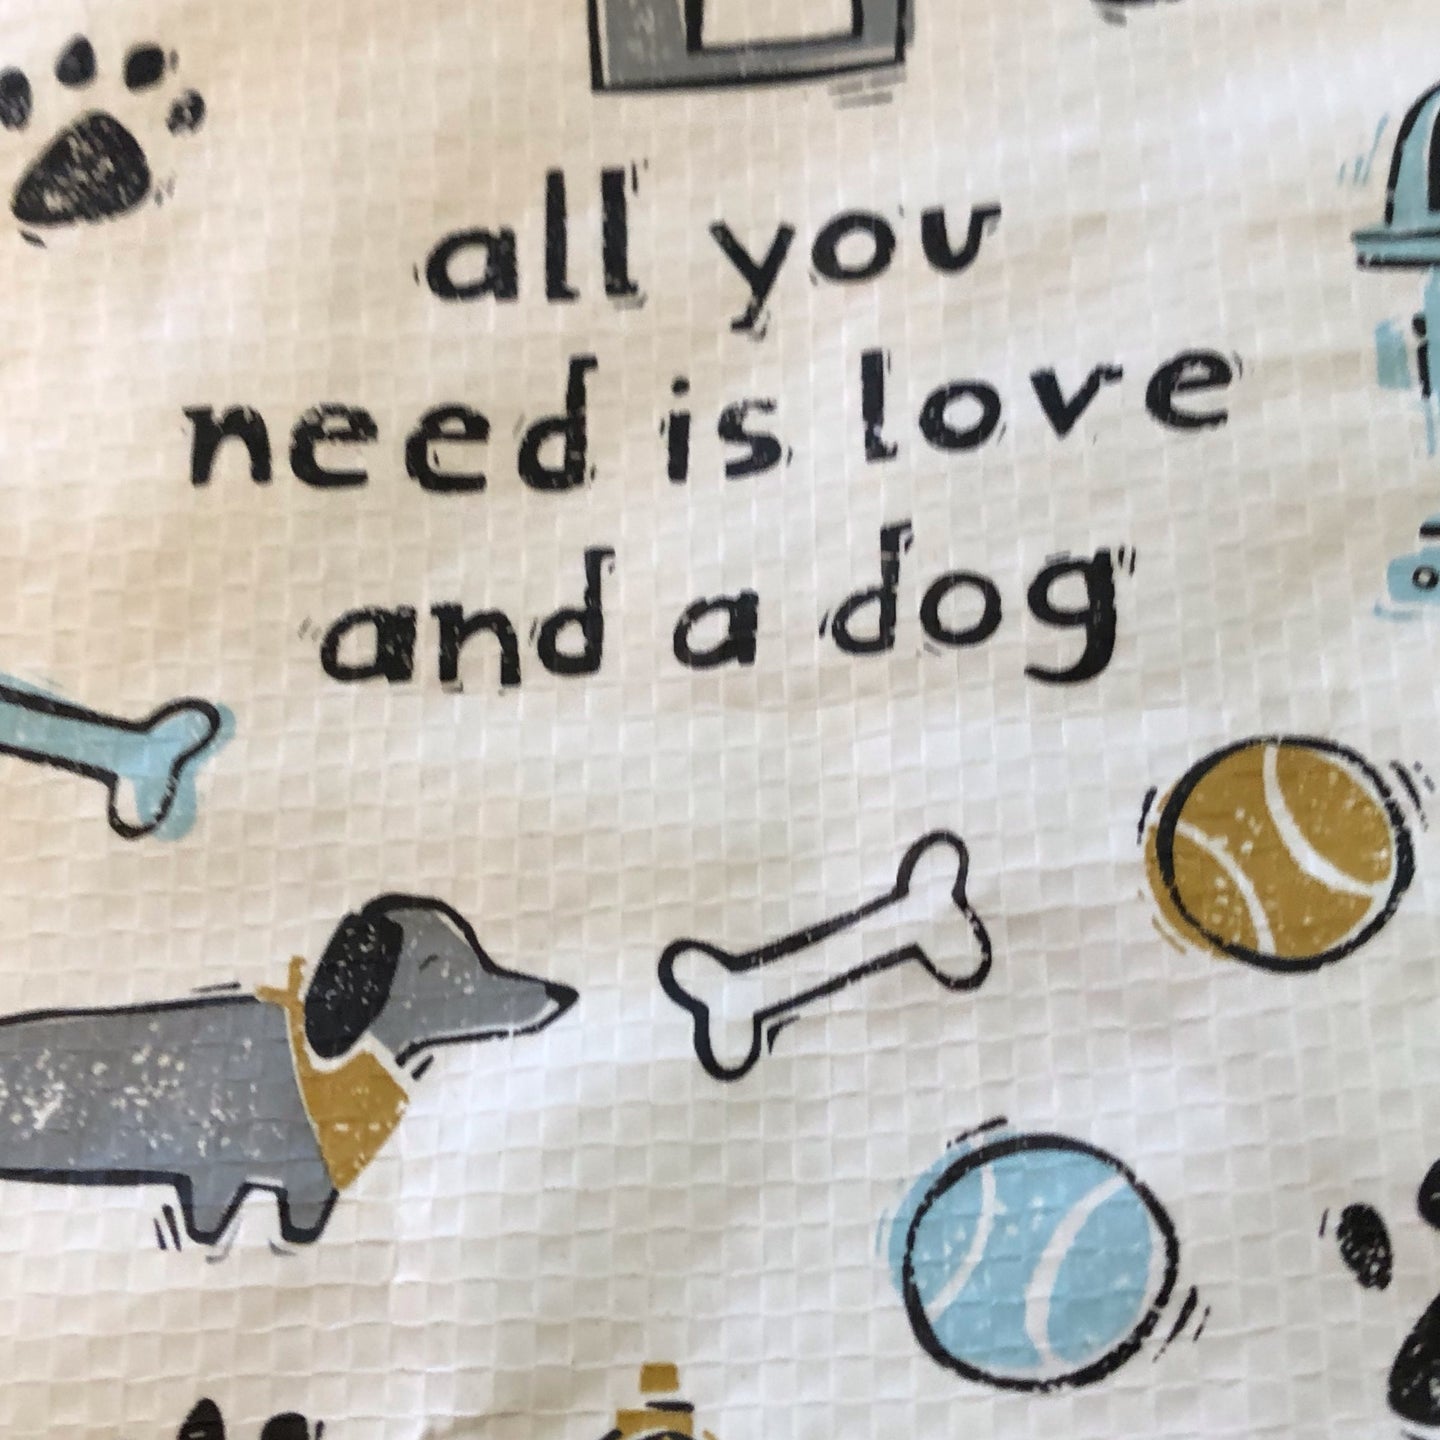 Large reusable dog patterned bag